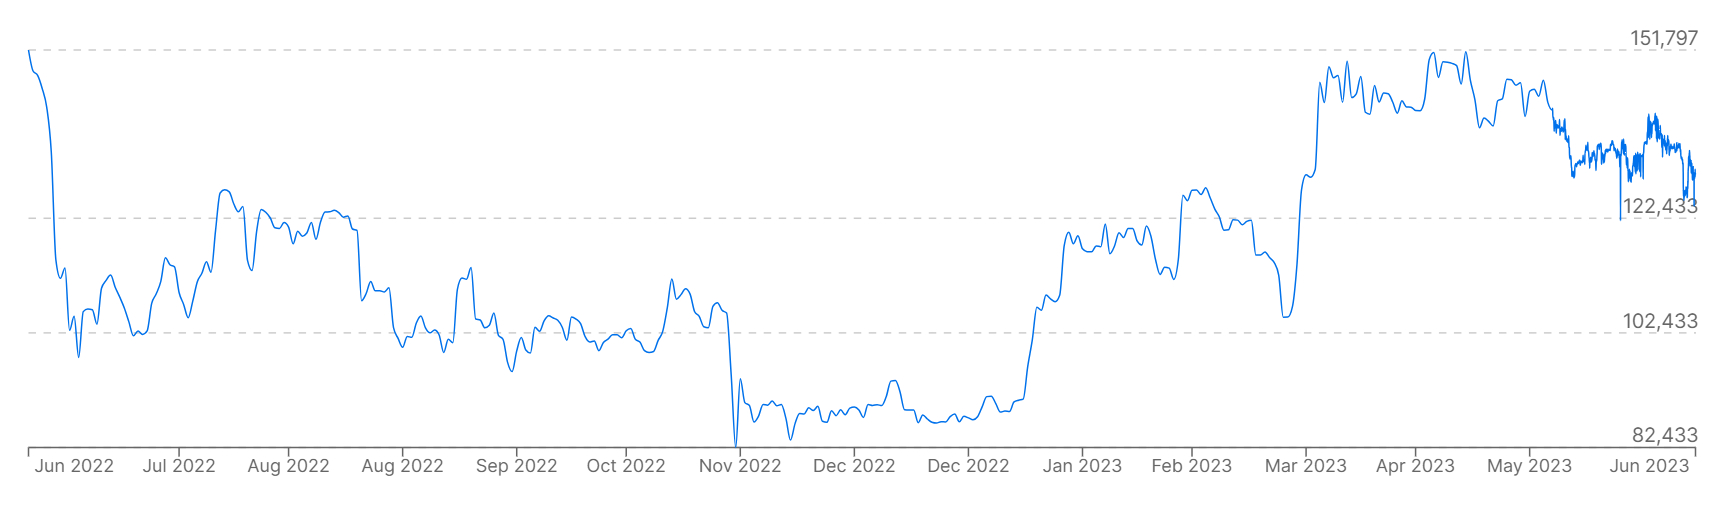 Un gráfico que muestra los precios de Bitcoin frente a BRL fiduciario durante el último año.